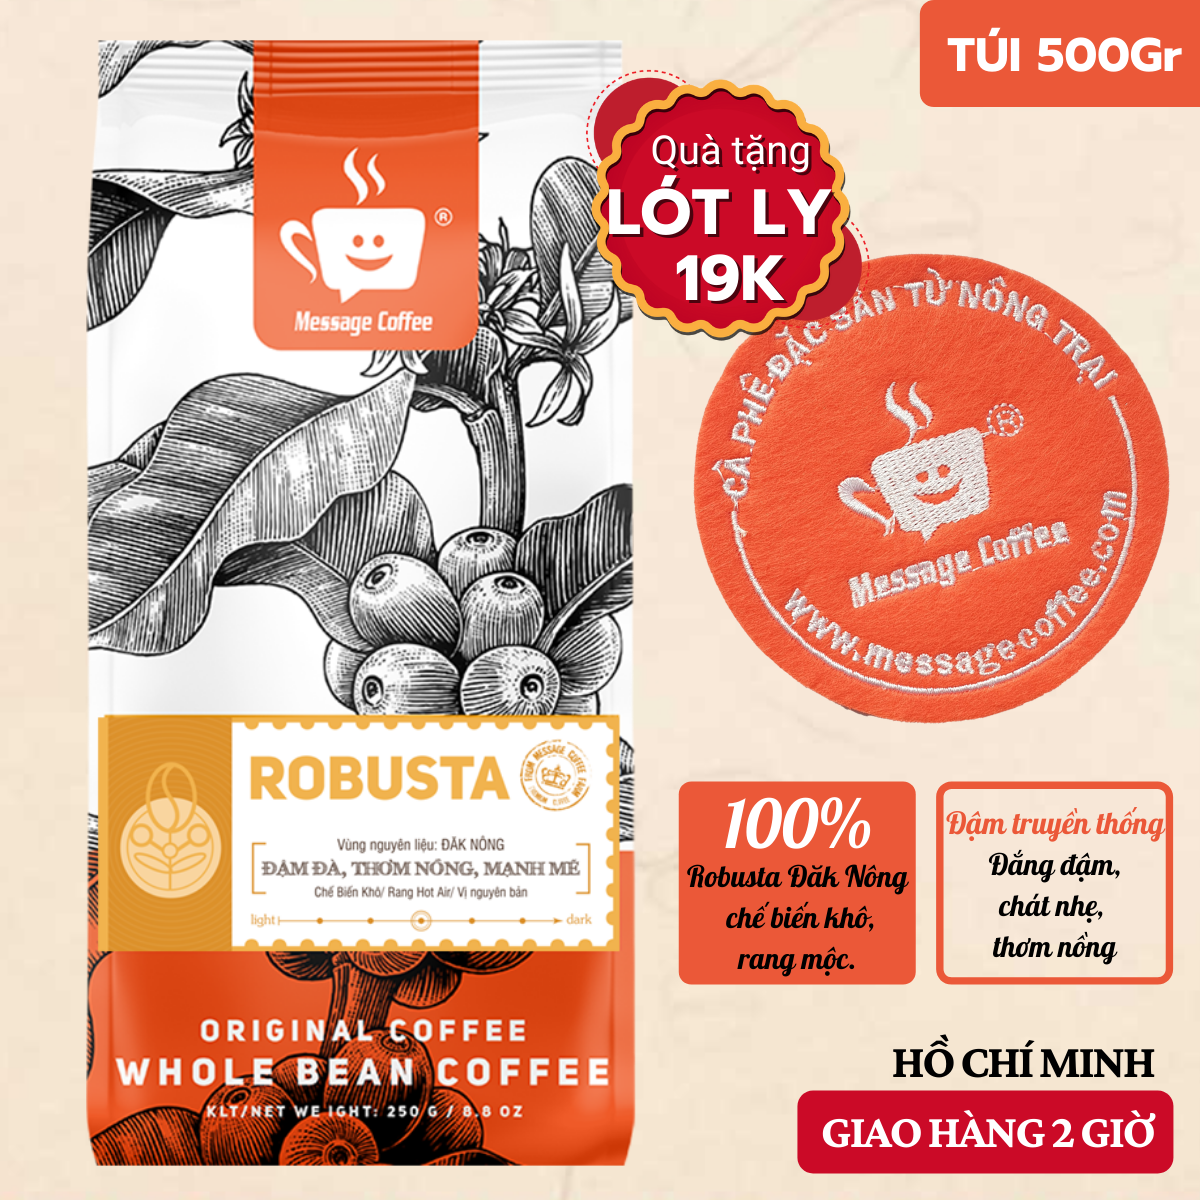 Cà phê Robusta TRUYỀN THỐNG NGUYÊN CHẤT rang mộc 100% cafe hạt